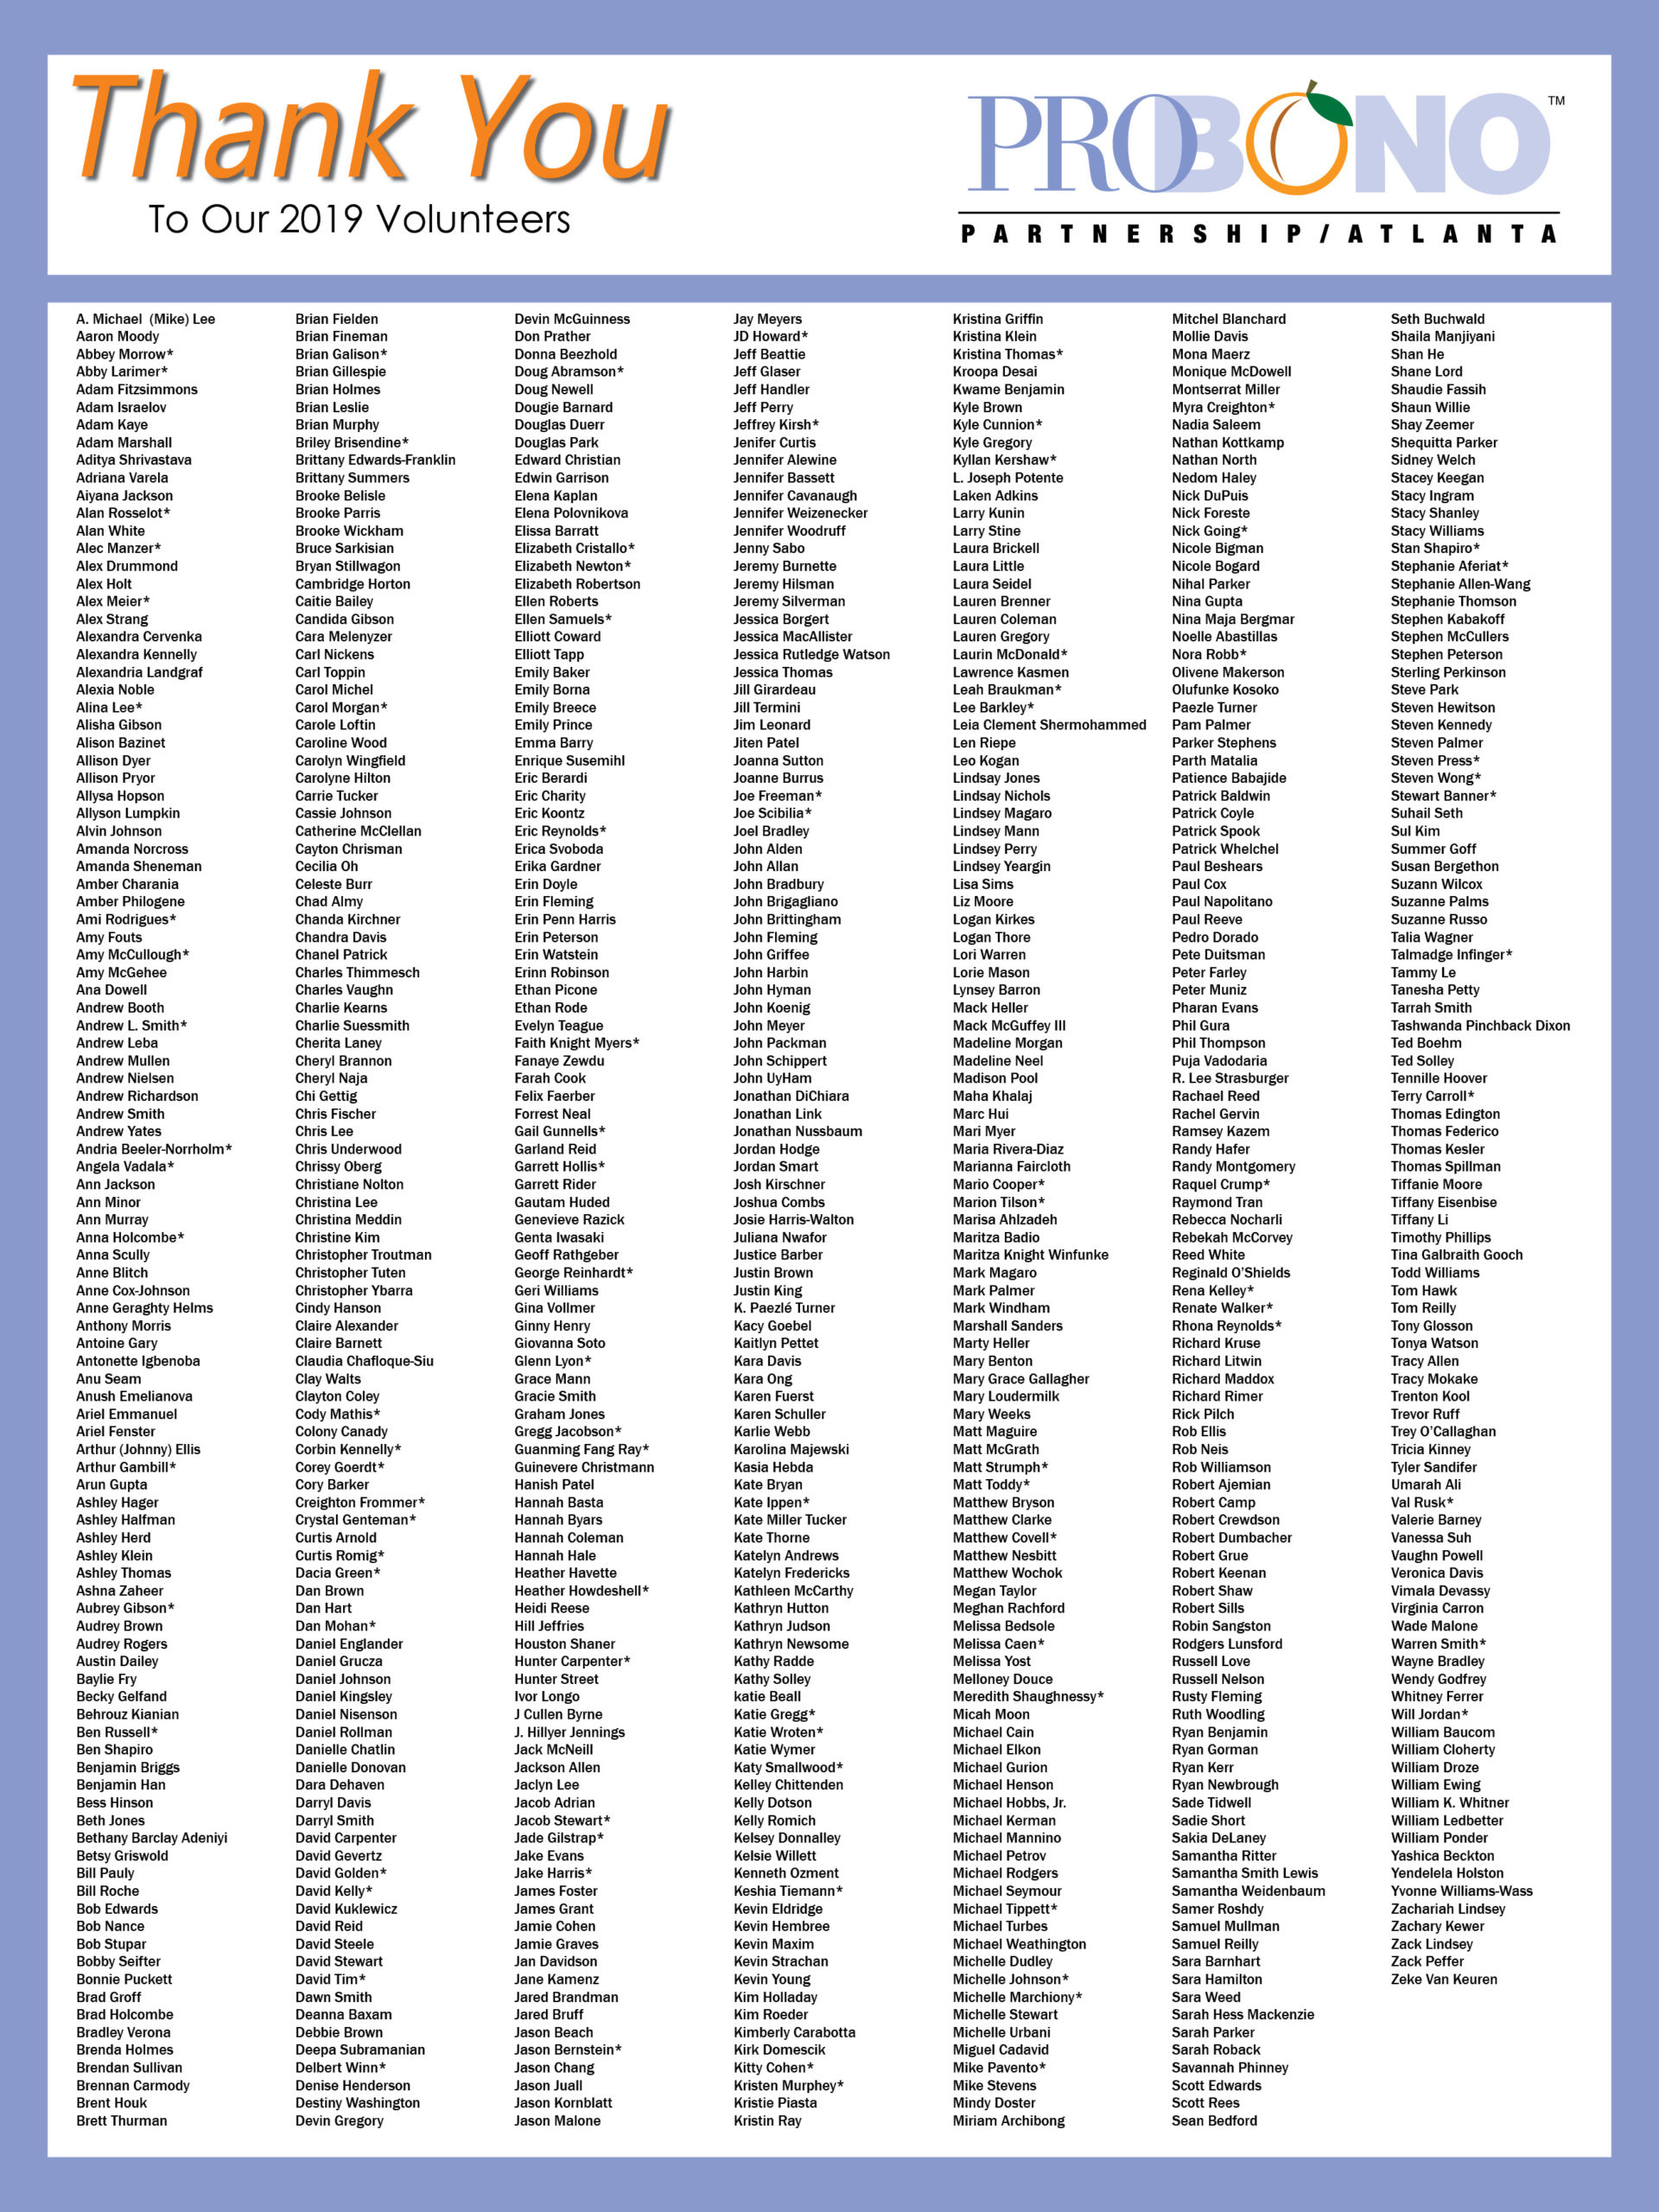 List of Volunteers in 2018